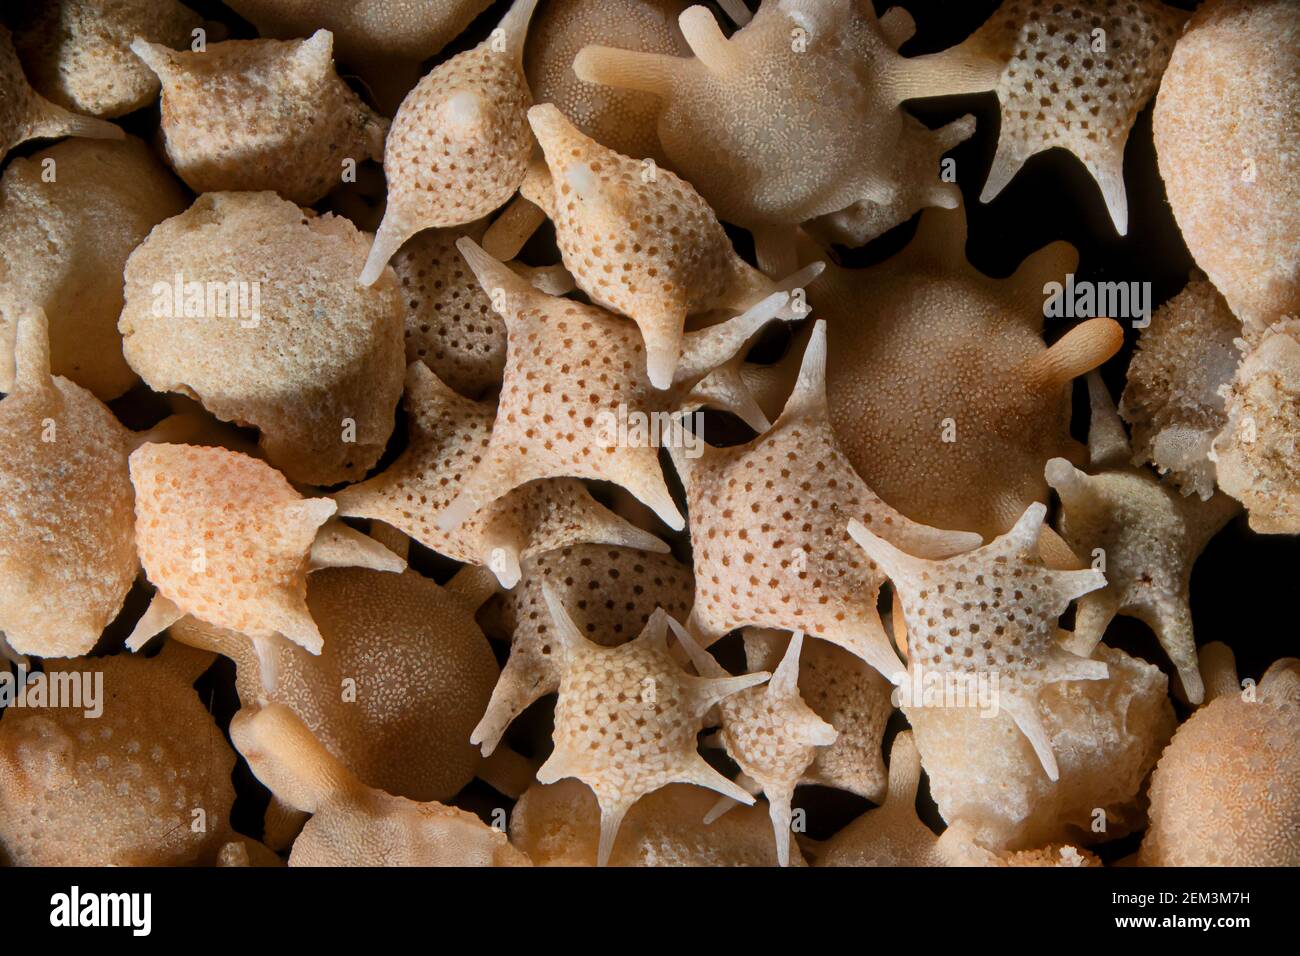 Foraminiferan, foram (Calcarina spec.), sable de foraminiferan du Japon, image de microscope léger, grossissement: X8 lié à 36mm, Japon Banque D'Images